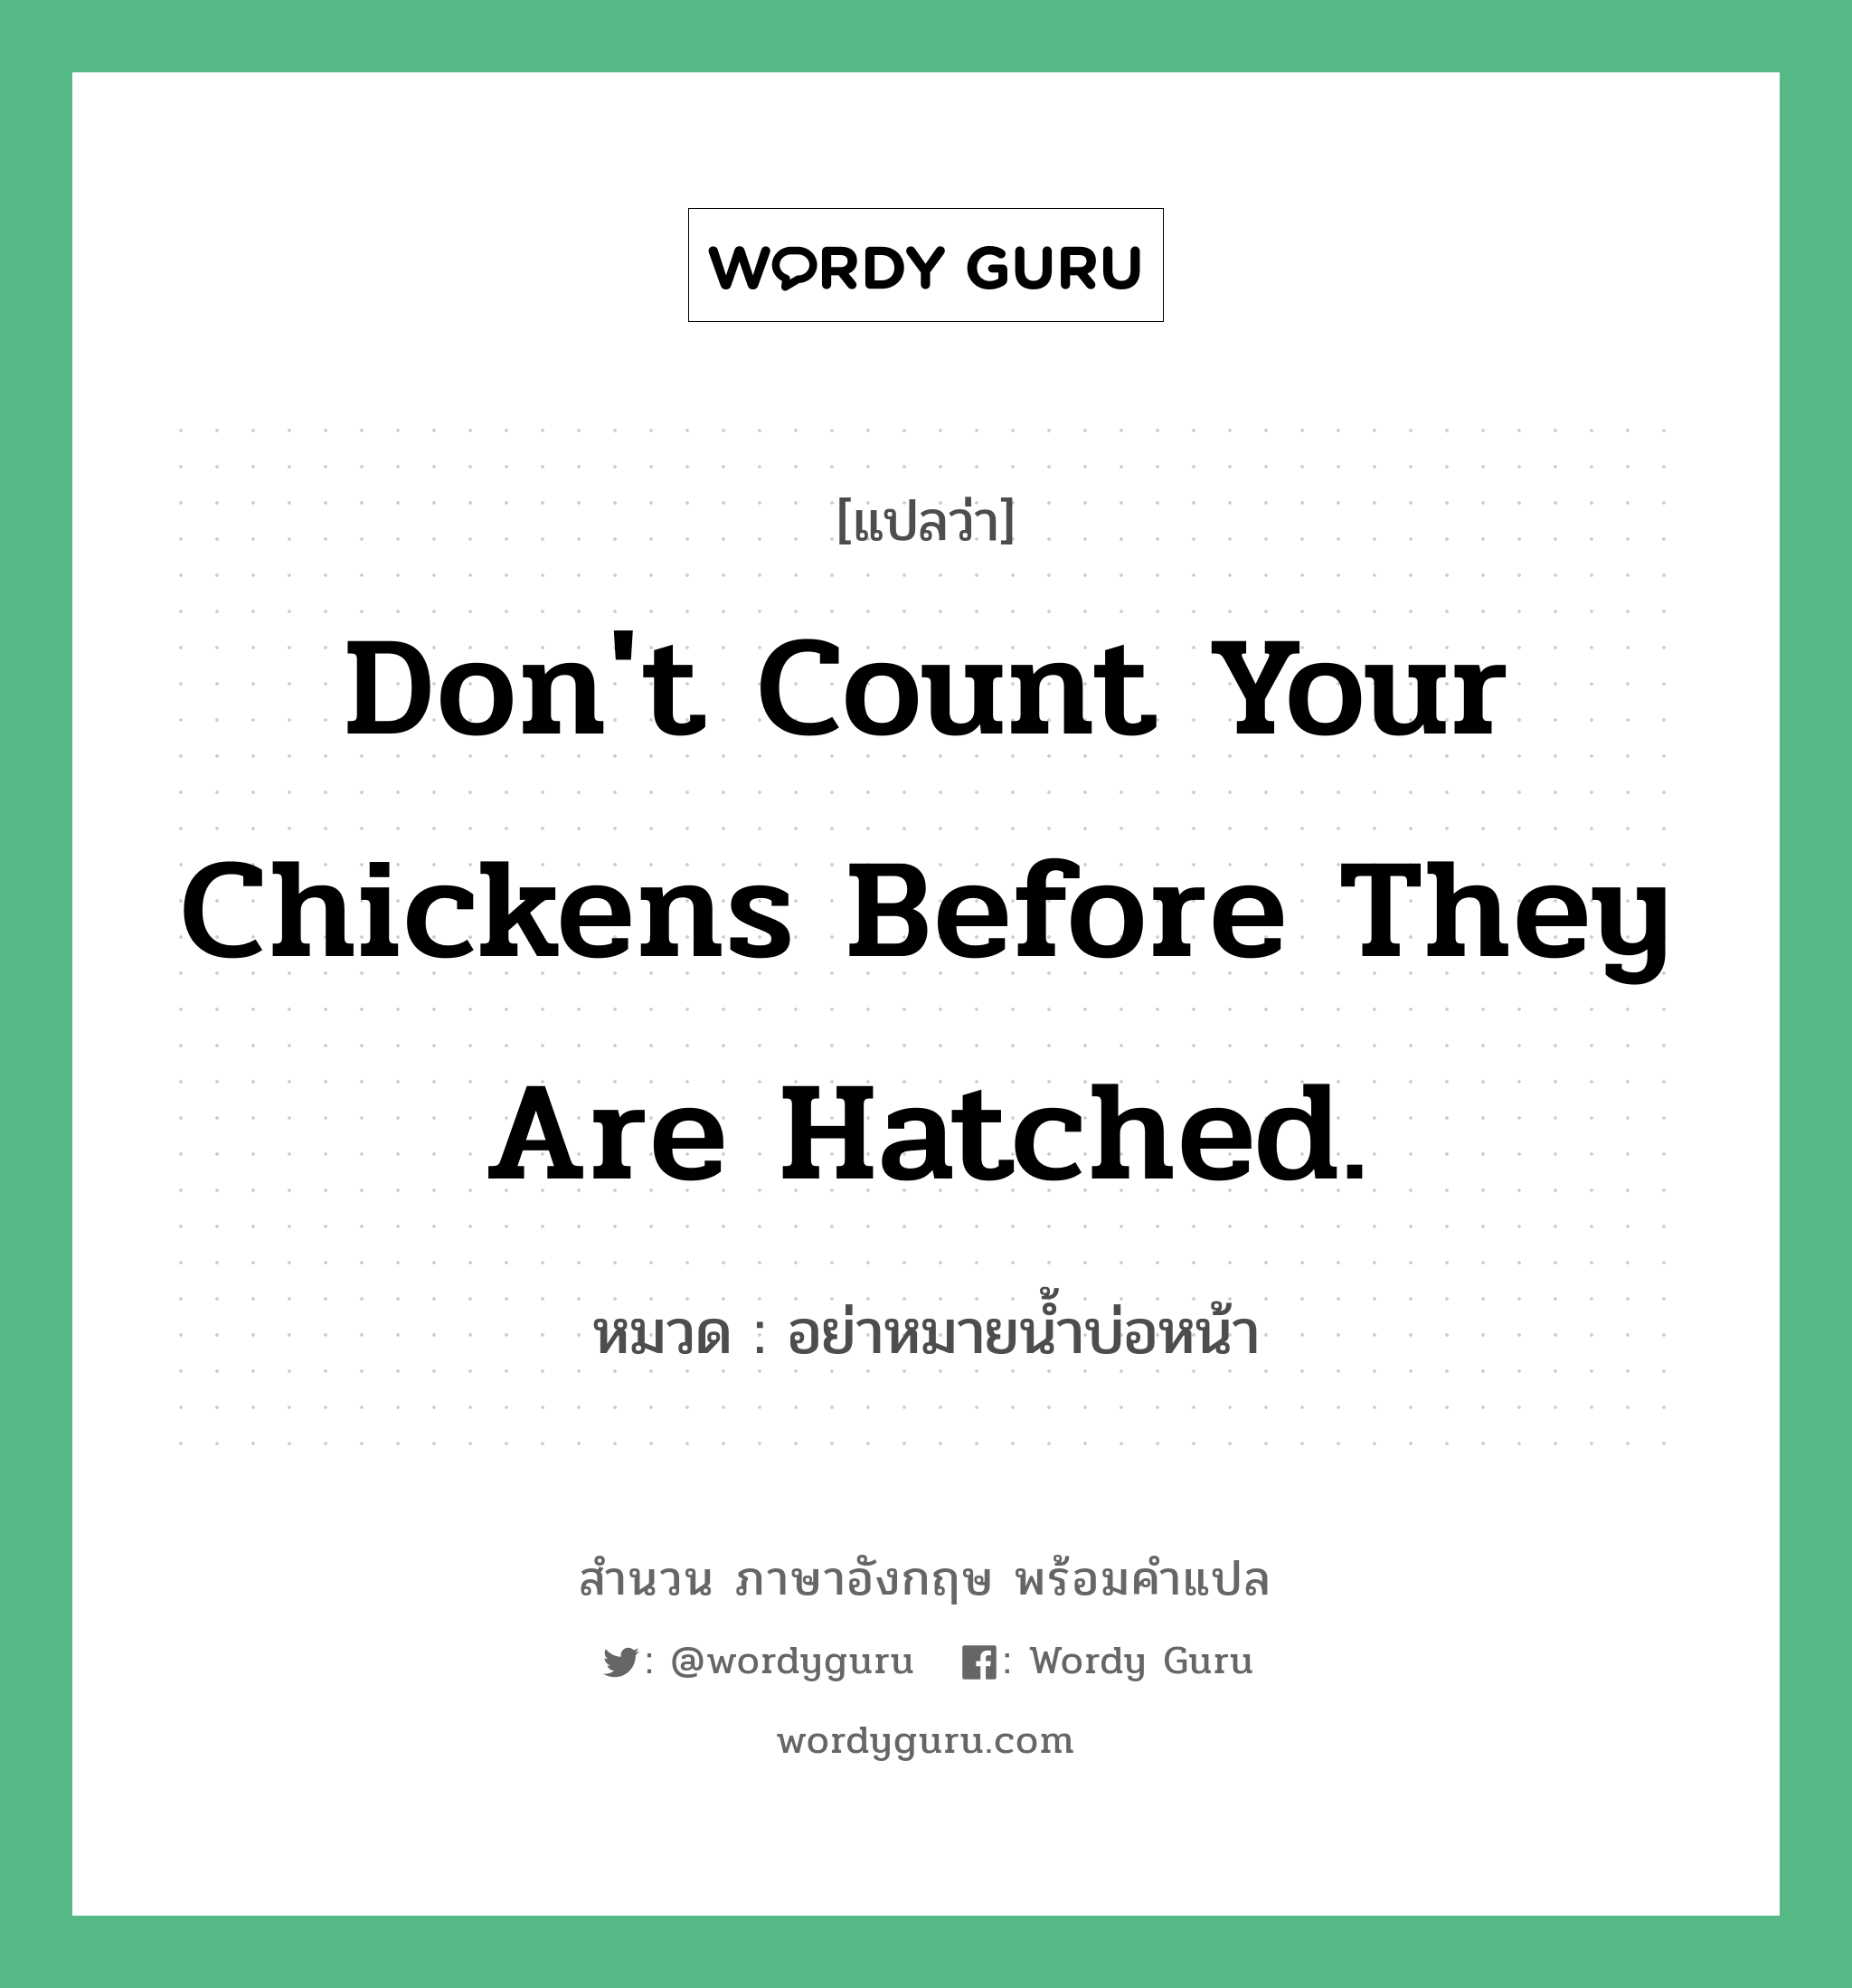 อย่าหมายน้ำบ่อหน้า ภาษาอังกฤษ?, สำนวนภาษาอังกฤษ อย่าหมายน้ำบ่อหน้า แปลว่า อย่าหมายน้ำบ่อหน้า หมวด Don't count your chickens before they are hatched. คำสุภาษิต ภาษาอังกฤษ หมวด คำสุภาษิต ภาษาอังกฤษ